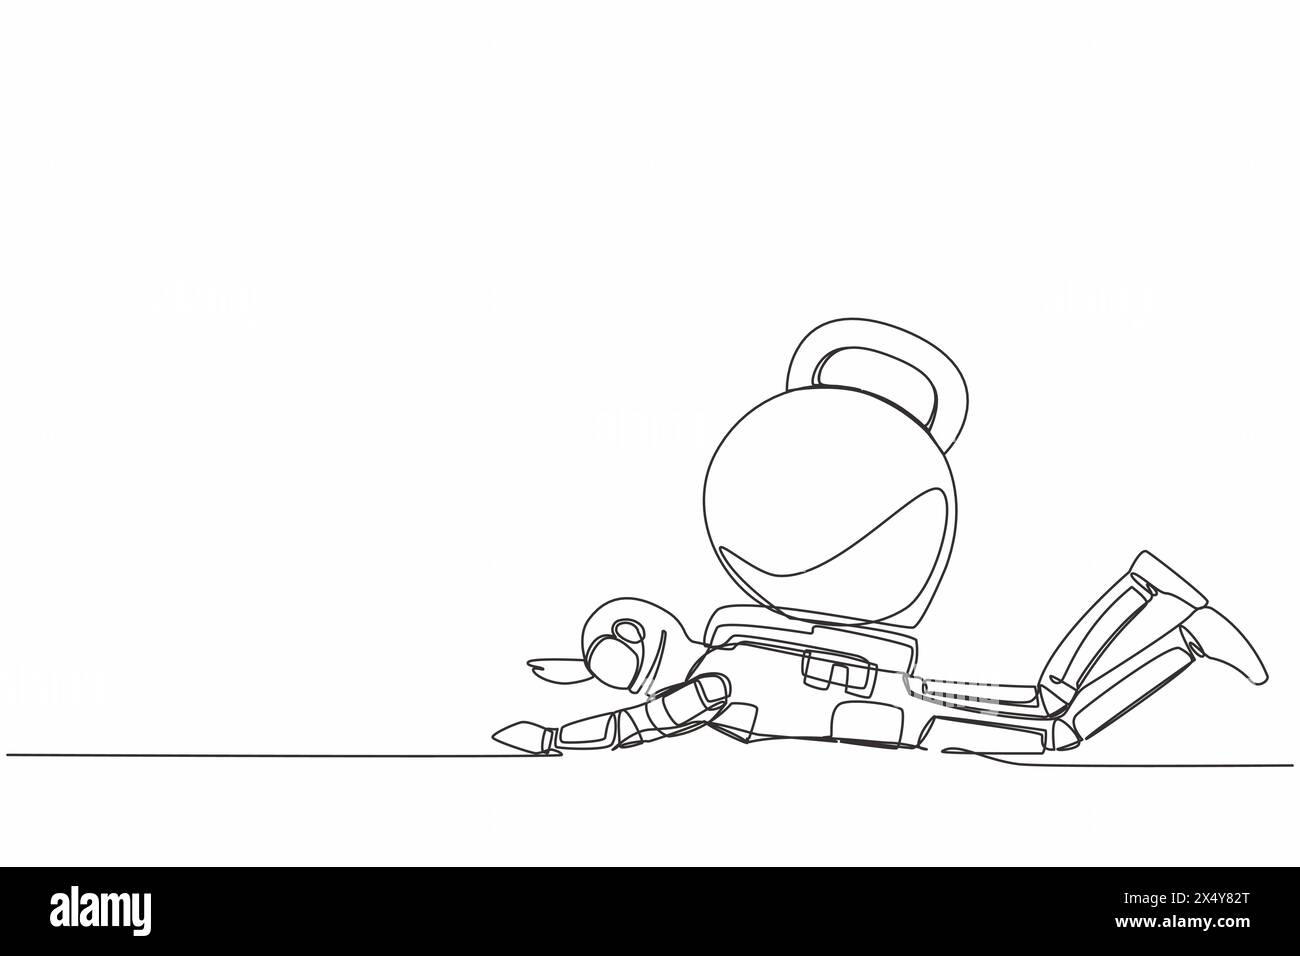 Une seule ligne dessinant un jeune astronaute sous le lourd fardeau de kettlebell. Crise financière dans la compagnie spatiale. Développement technologique. Espace galaxique cosmique. Illustration de Vecteur